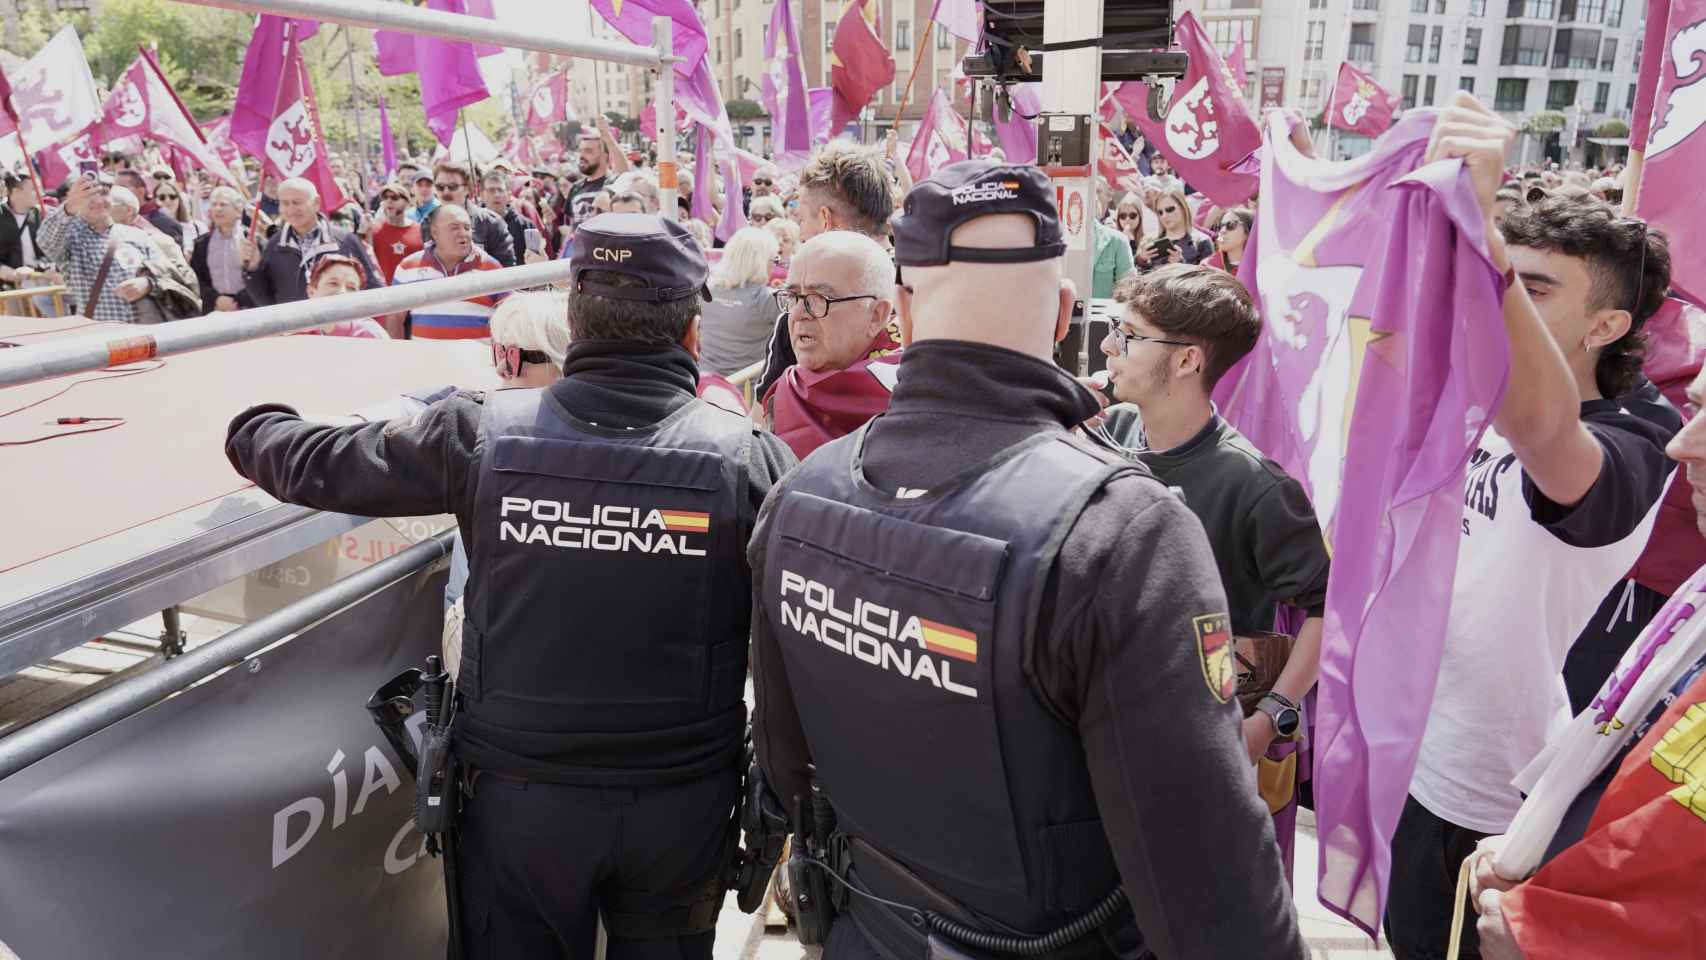 La irrupción de manifestantes obliga a suspender las actividades festivas en la plaza de San Marcos de León